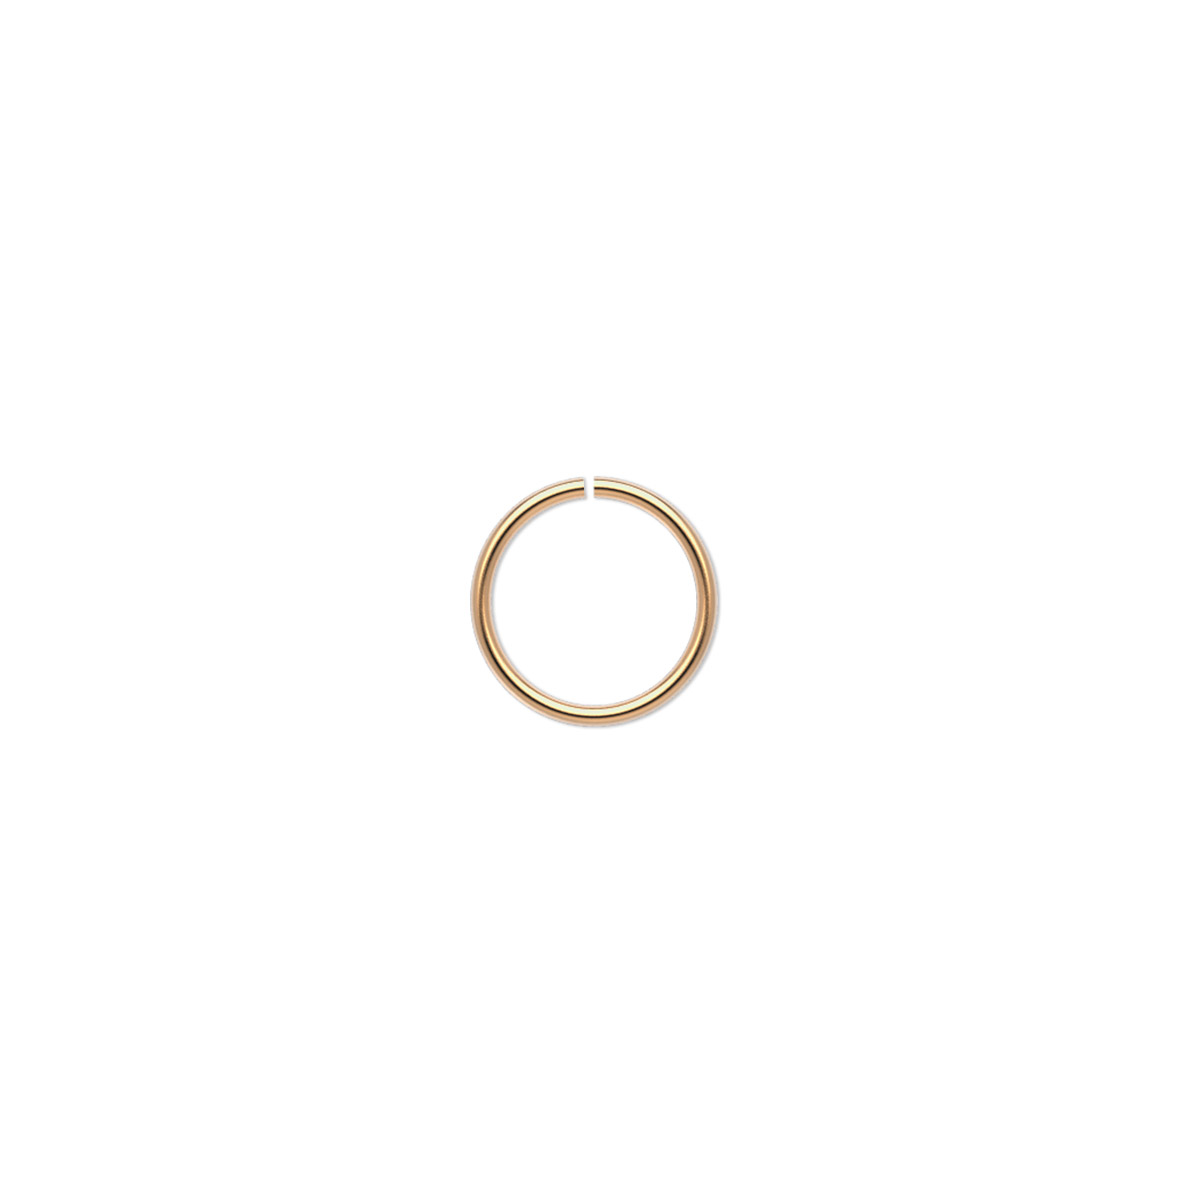 Jump ring, 14Kt gold-filled, 9mm round, 7.5mm inside diameter, 20 gauge ...